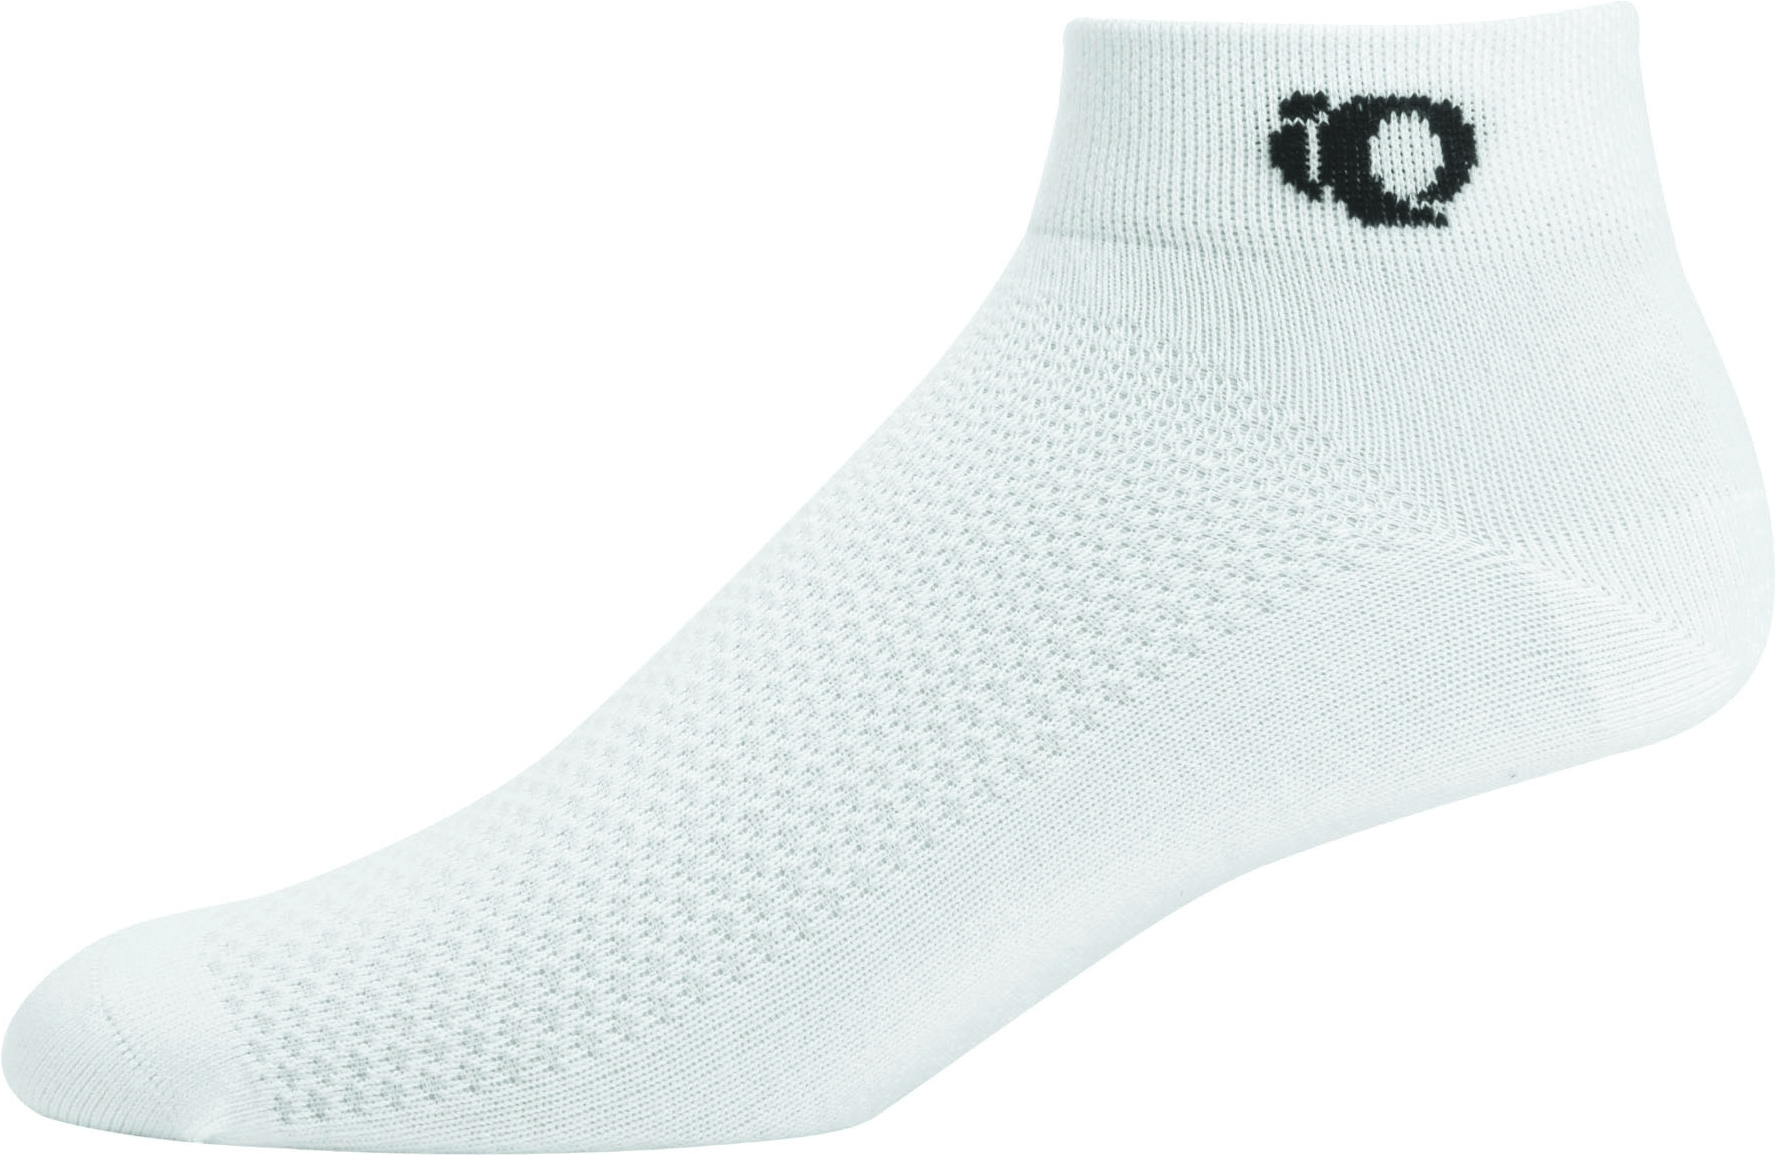 Northwave Logo 2 High Fahrrad Socken weiß/schwarz 2019 